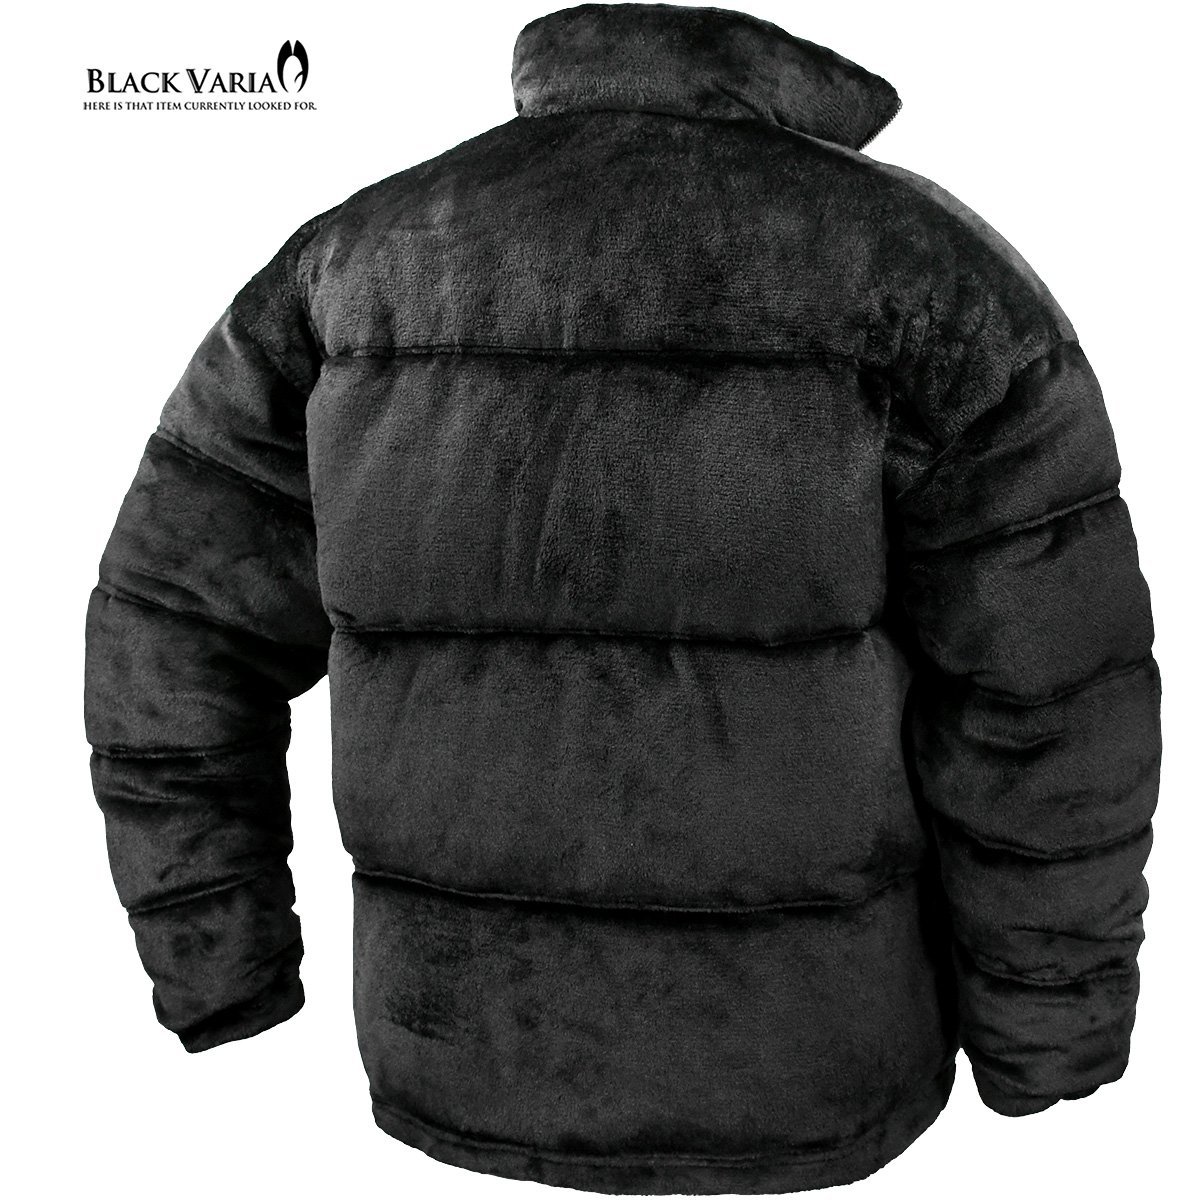 424007-20 BlackVaria ファーブルゾン 中綿ジャケット オーバーサイズ 無地 アウター パデッドジャケット メンズ(ブラック黒) XL ゆったり_画像2